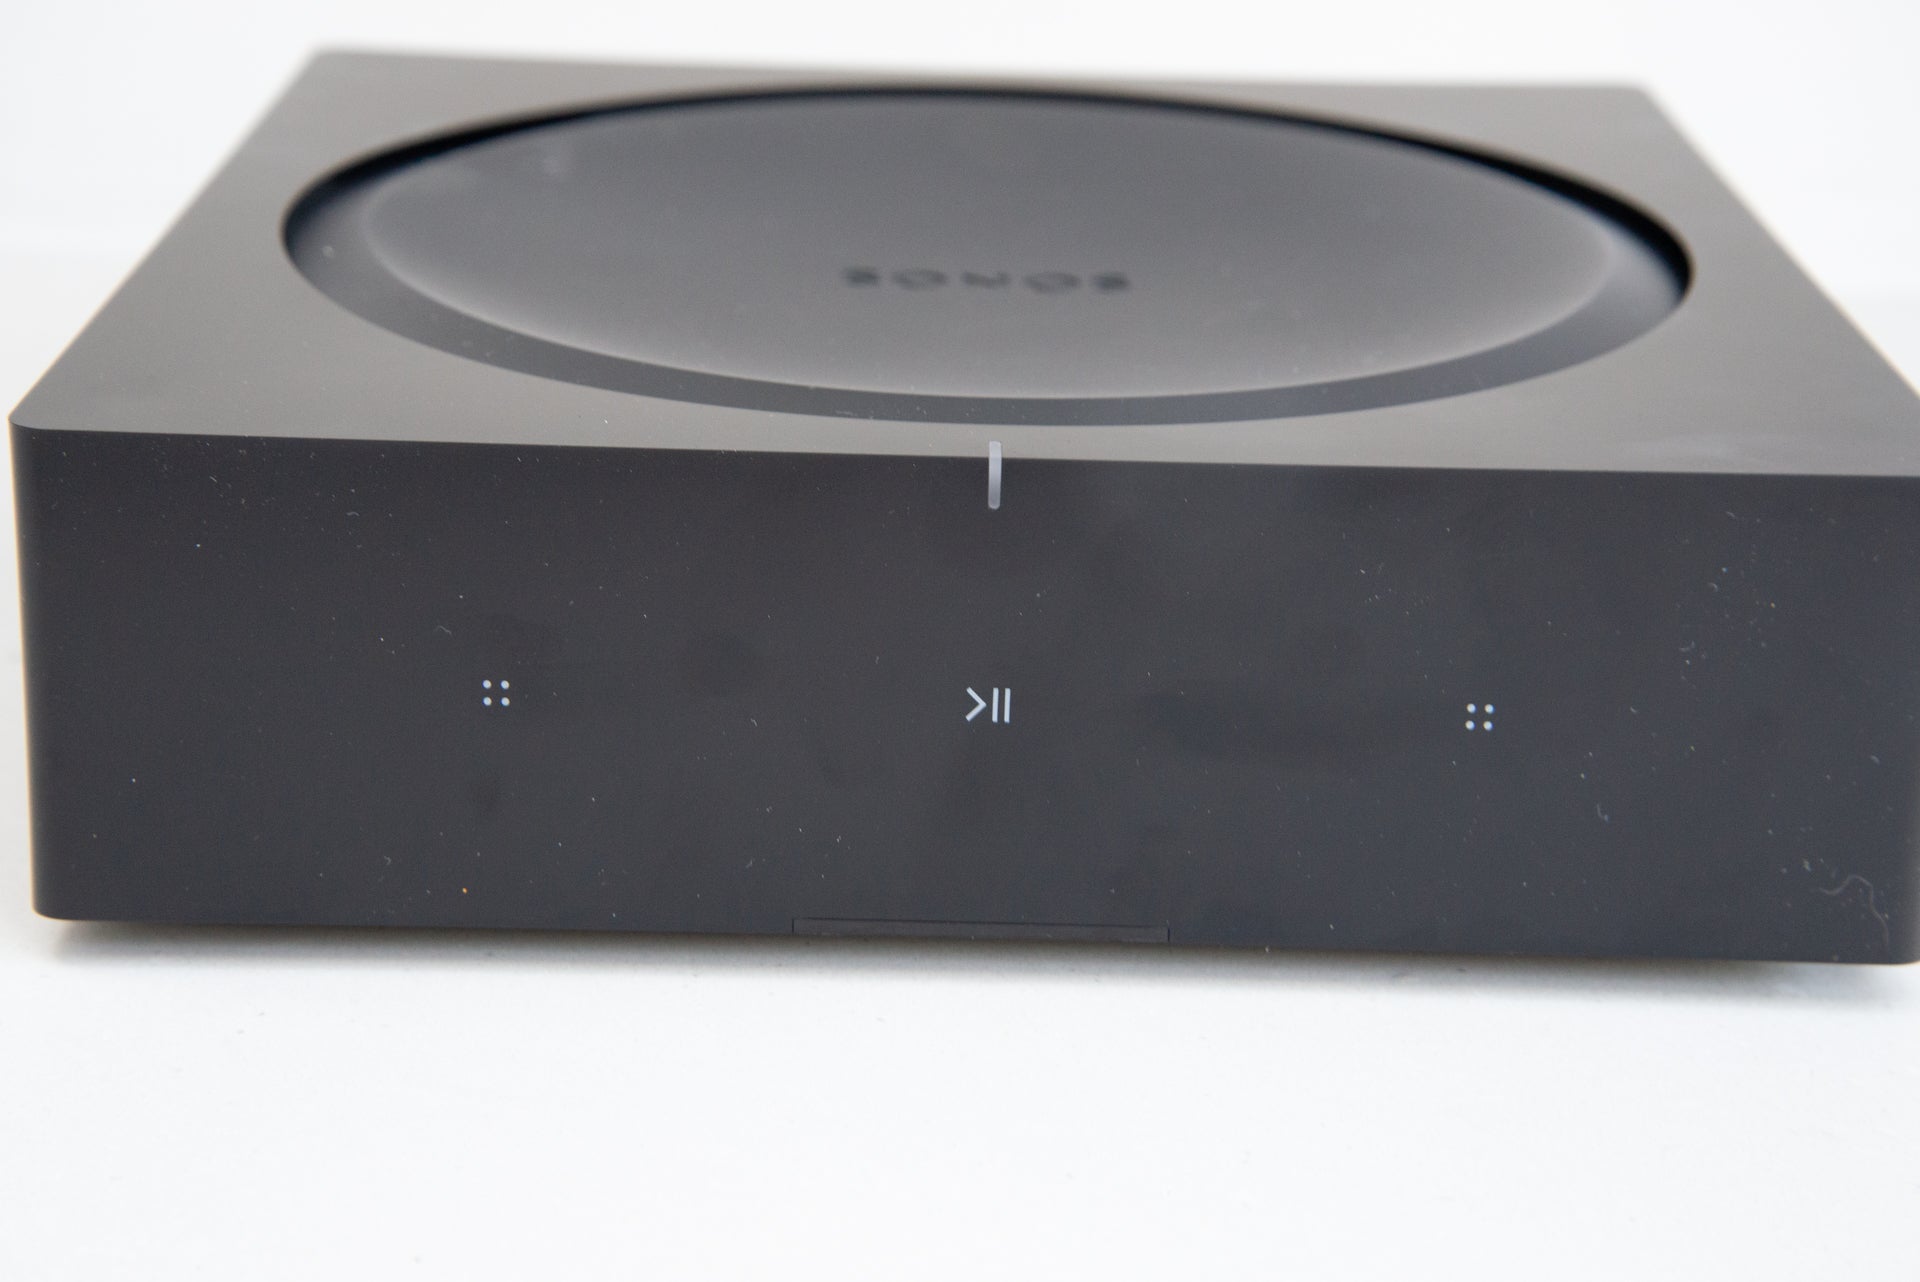 Amp - The best-sounding Sonos speaker